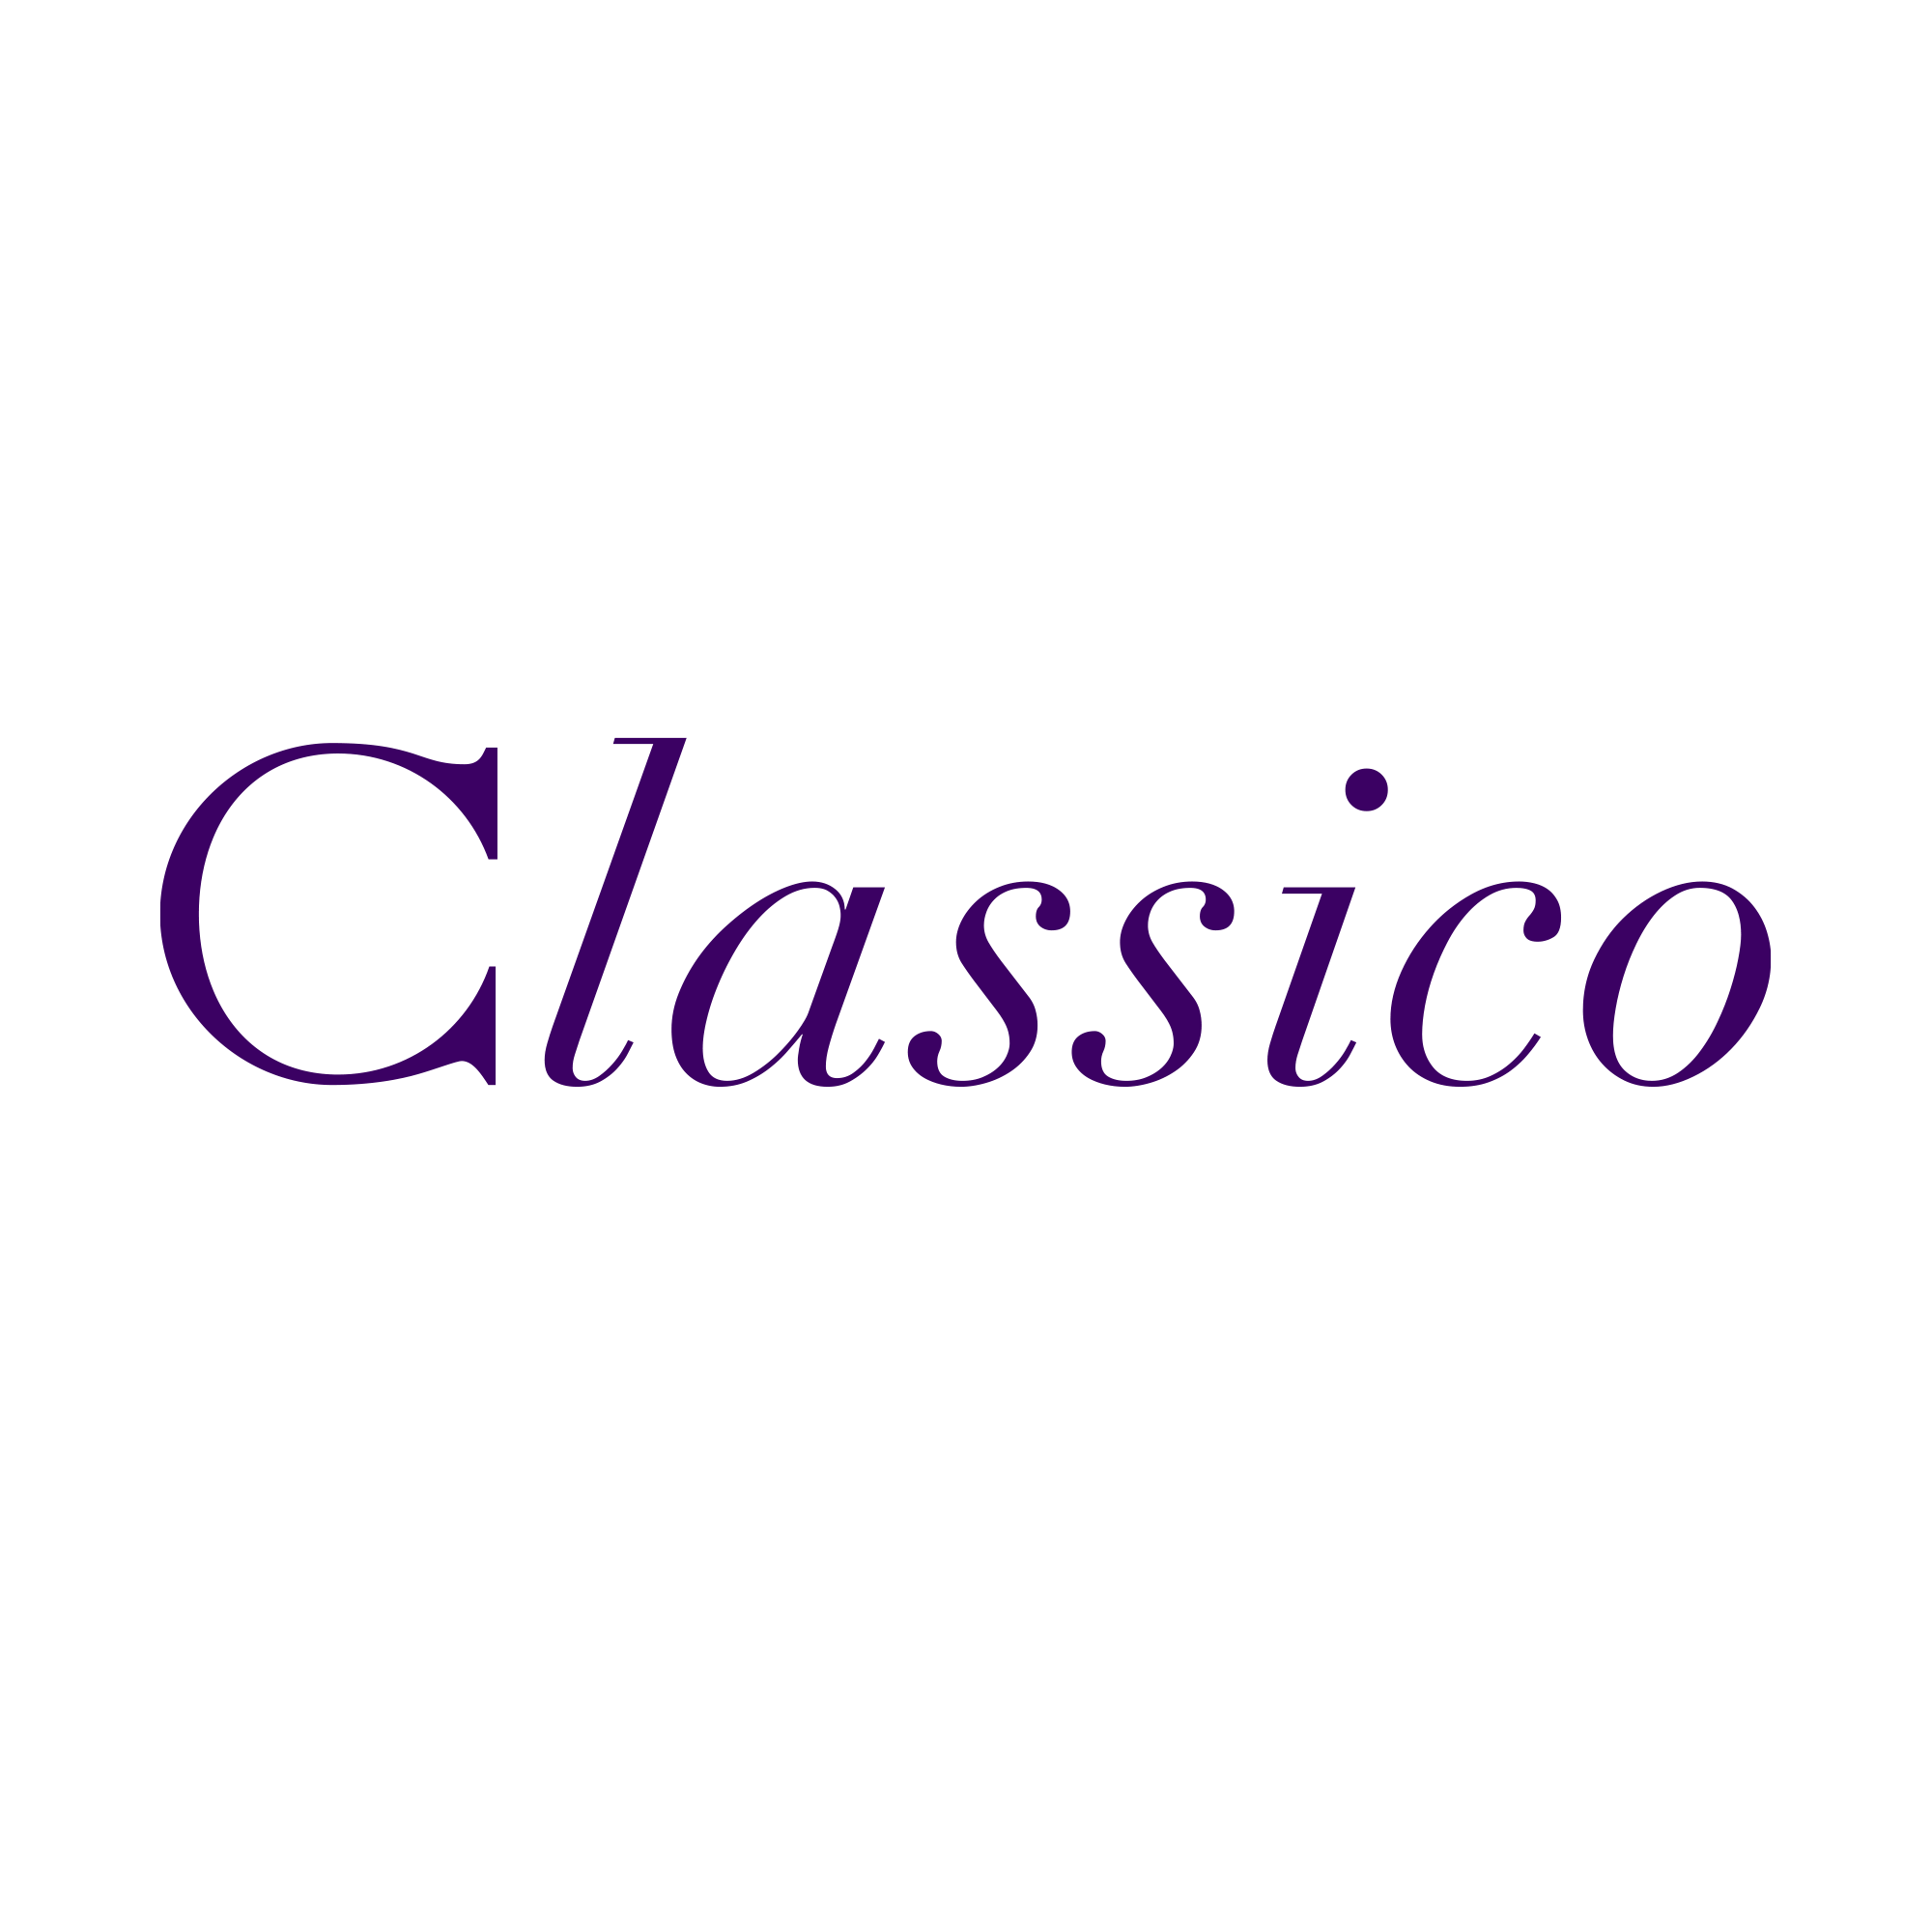 メディカルアパレルブランド『クラシコ』のロゴ